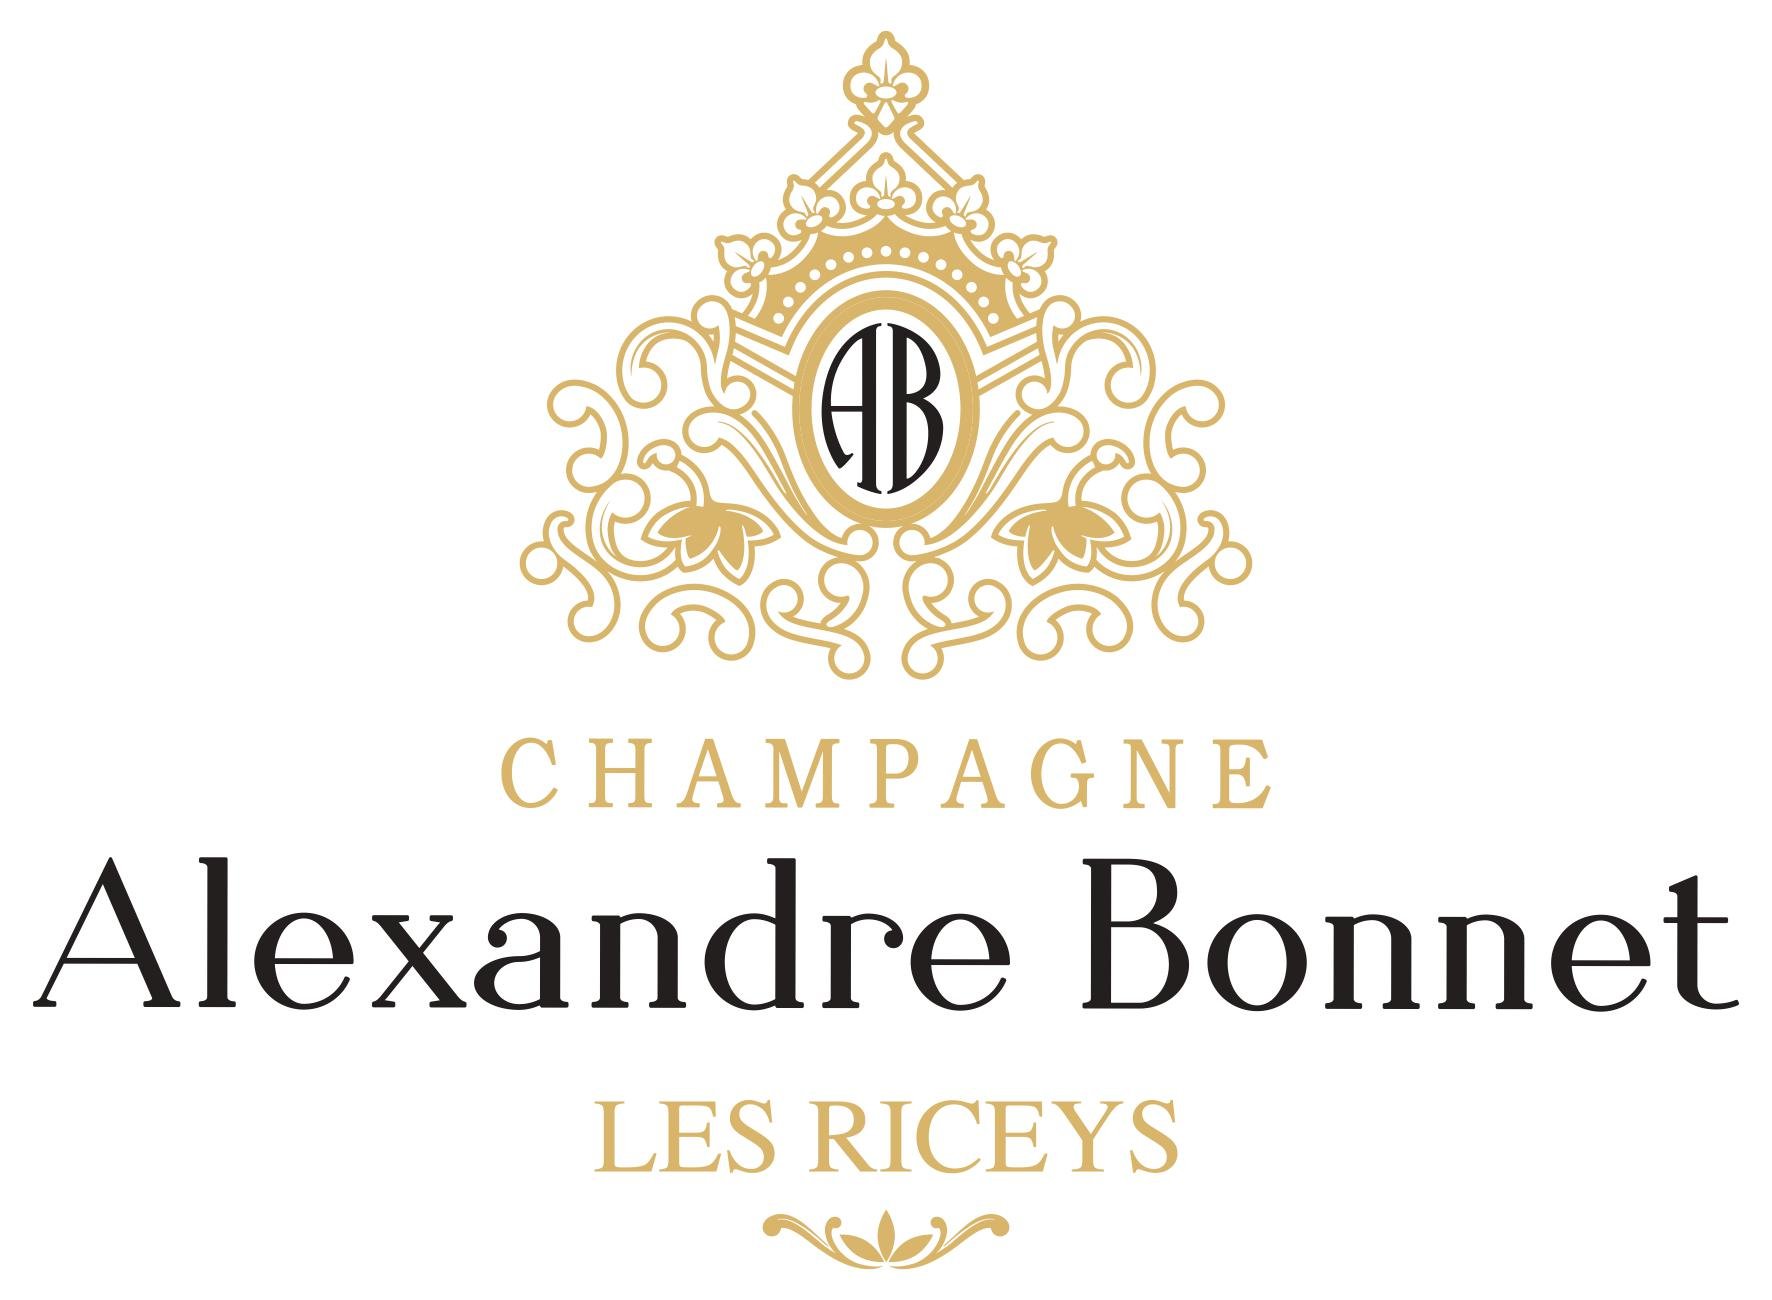 Alexandre Bonnet Champagne